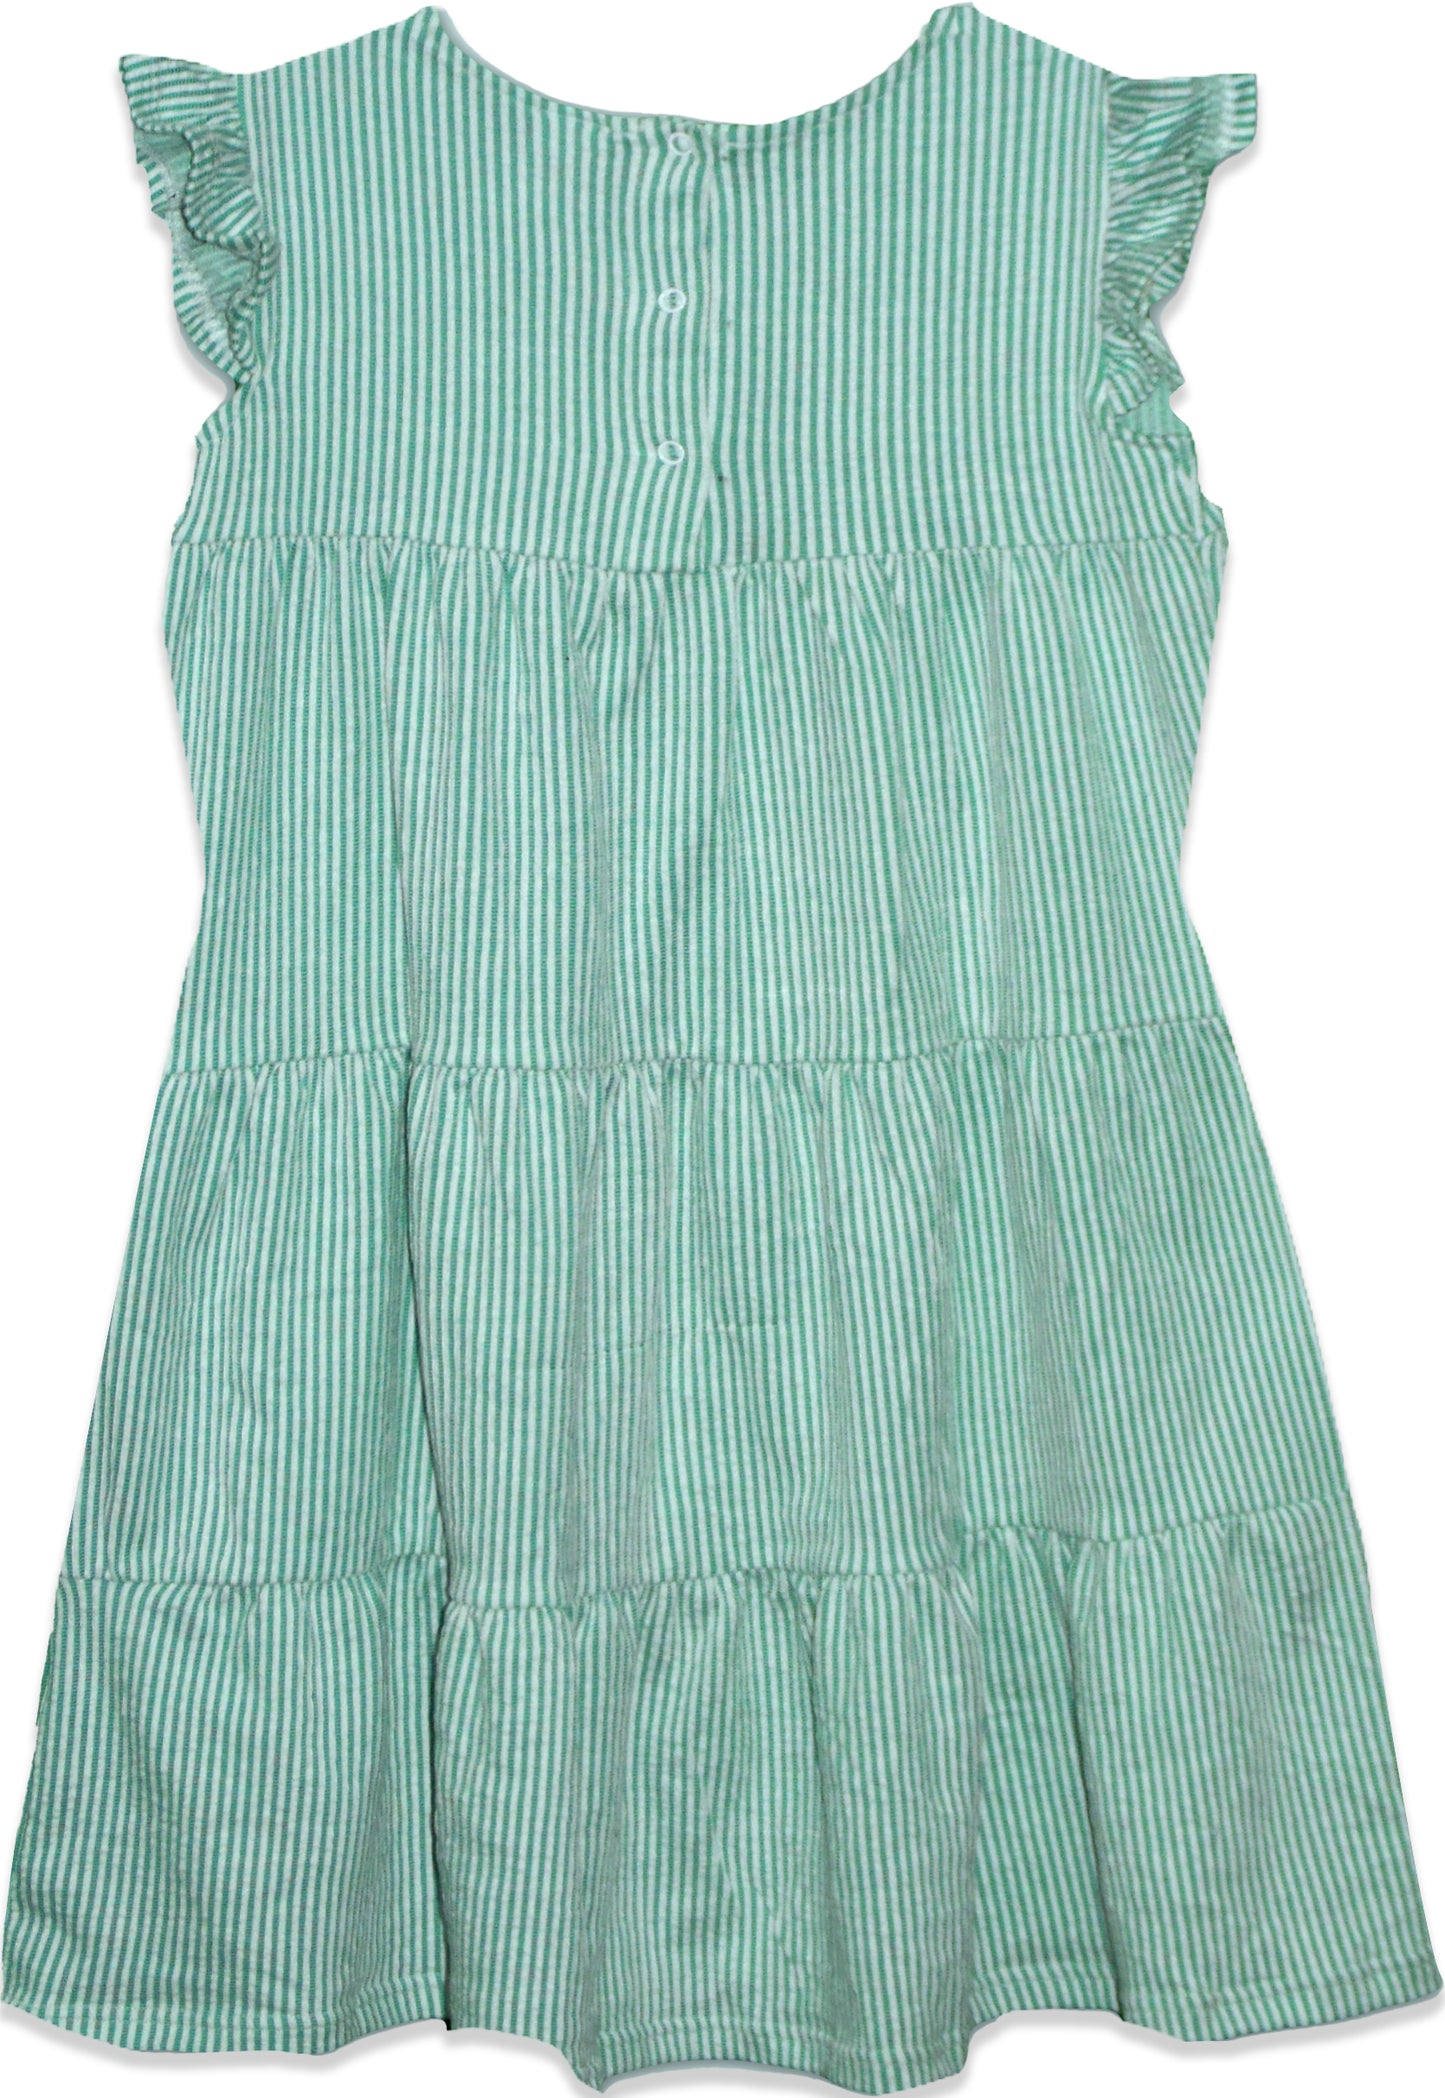 Girls frill cap sleeve A-line tiered Seersucker Cotton Dress